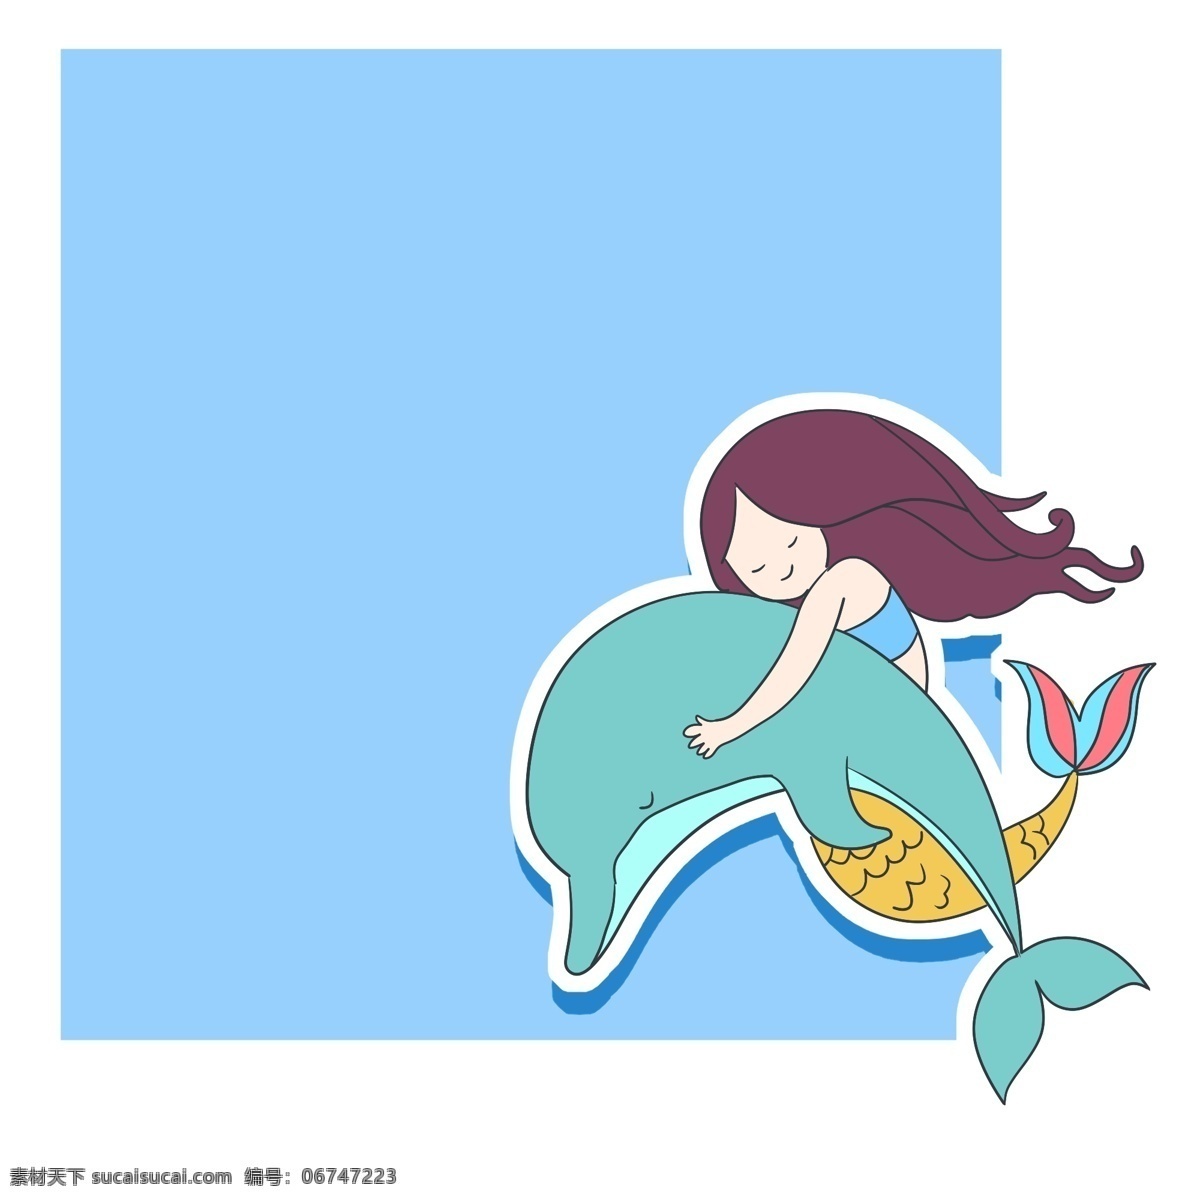 手绘 人物 小鱼 边框 蓝色的边框 卡通的插画 手绘插画 边框插画 人物和小鱼